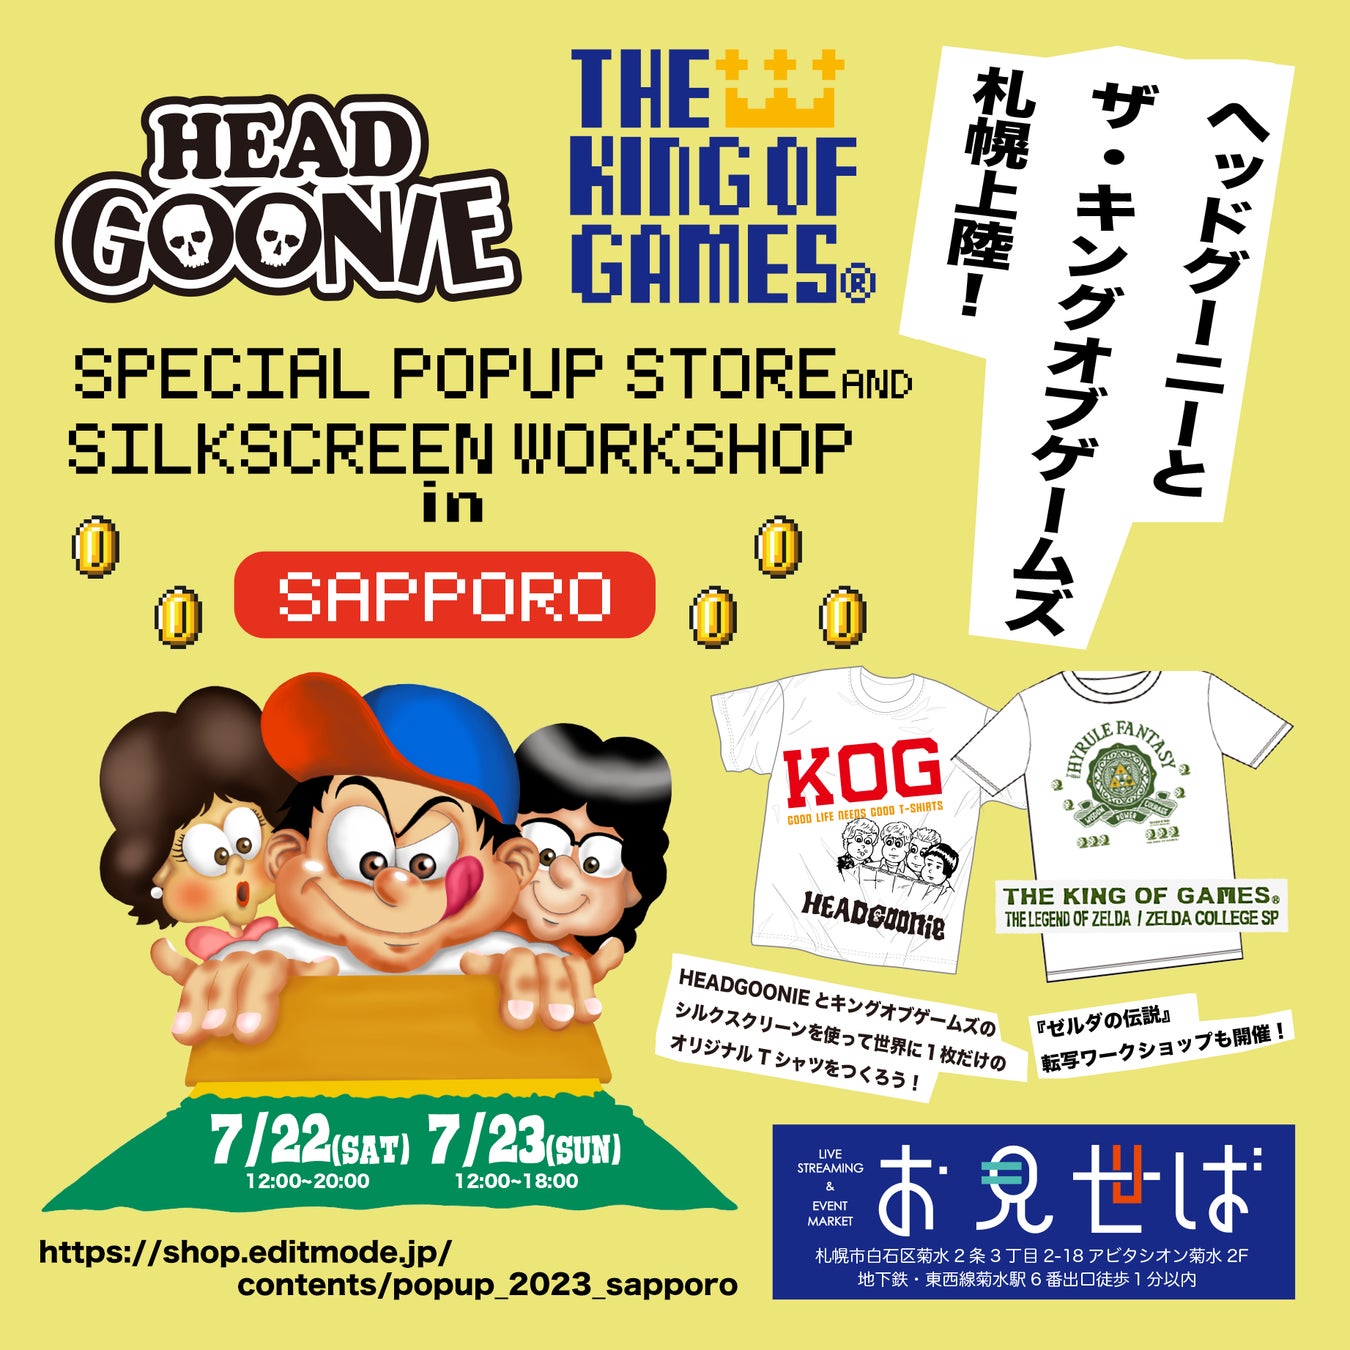 【まるごと催事】HEAD GOONIE、THE KING OF GAMES主催の人気イベントが札幌初上陸、世界に一つだけのオリジナルTシャツを作成できる数量限定のスペシャルワークショップも実施